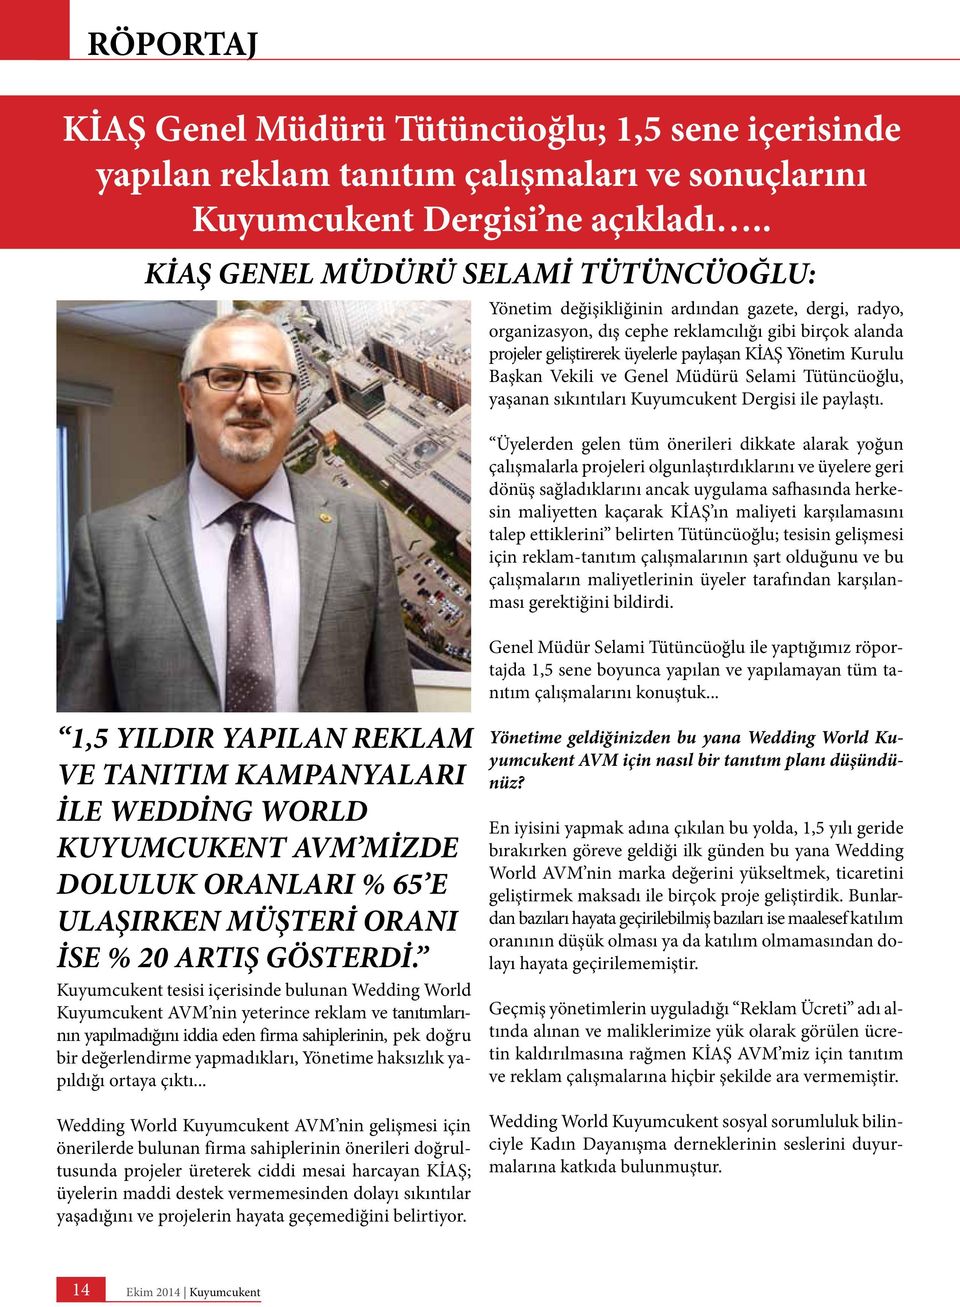 Yönetim Kurulu Başkan Vekili ve Genel Müdürü Selami Tütüncüoğlu, yaşanan sıkıntıları Kuyumcukent Dergisi ile paylaştı.